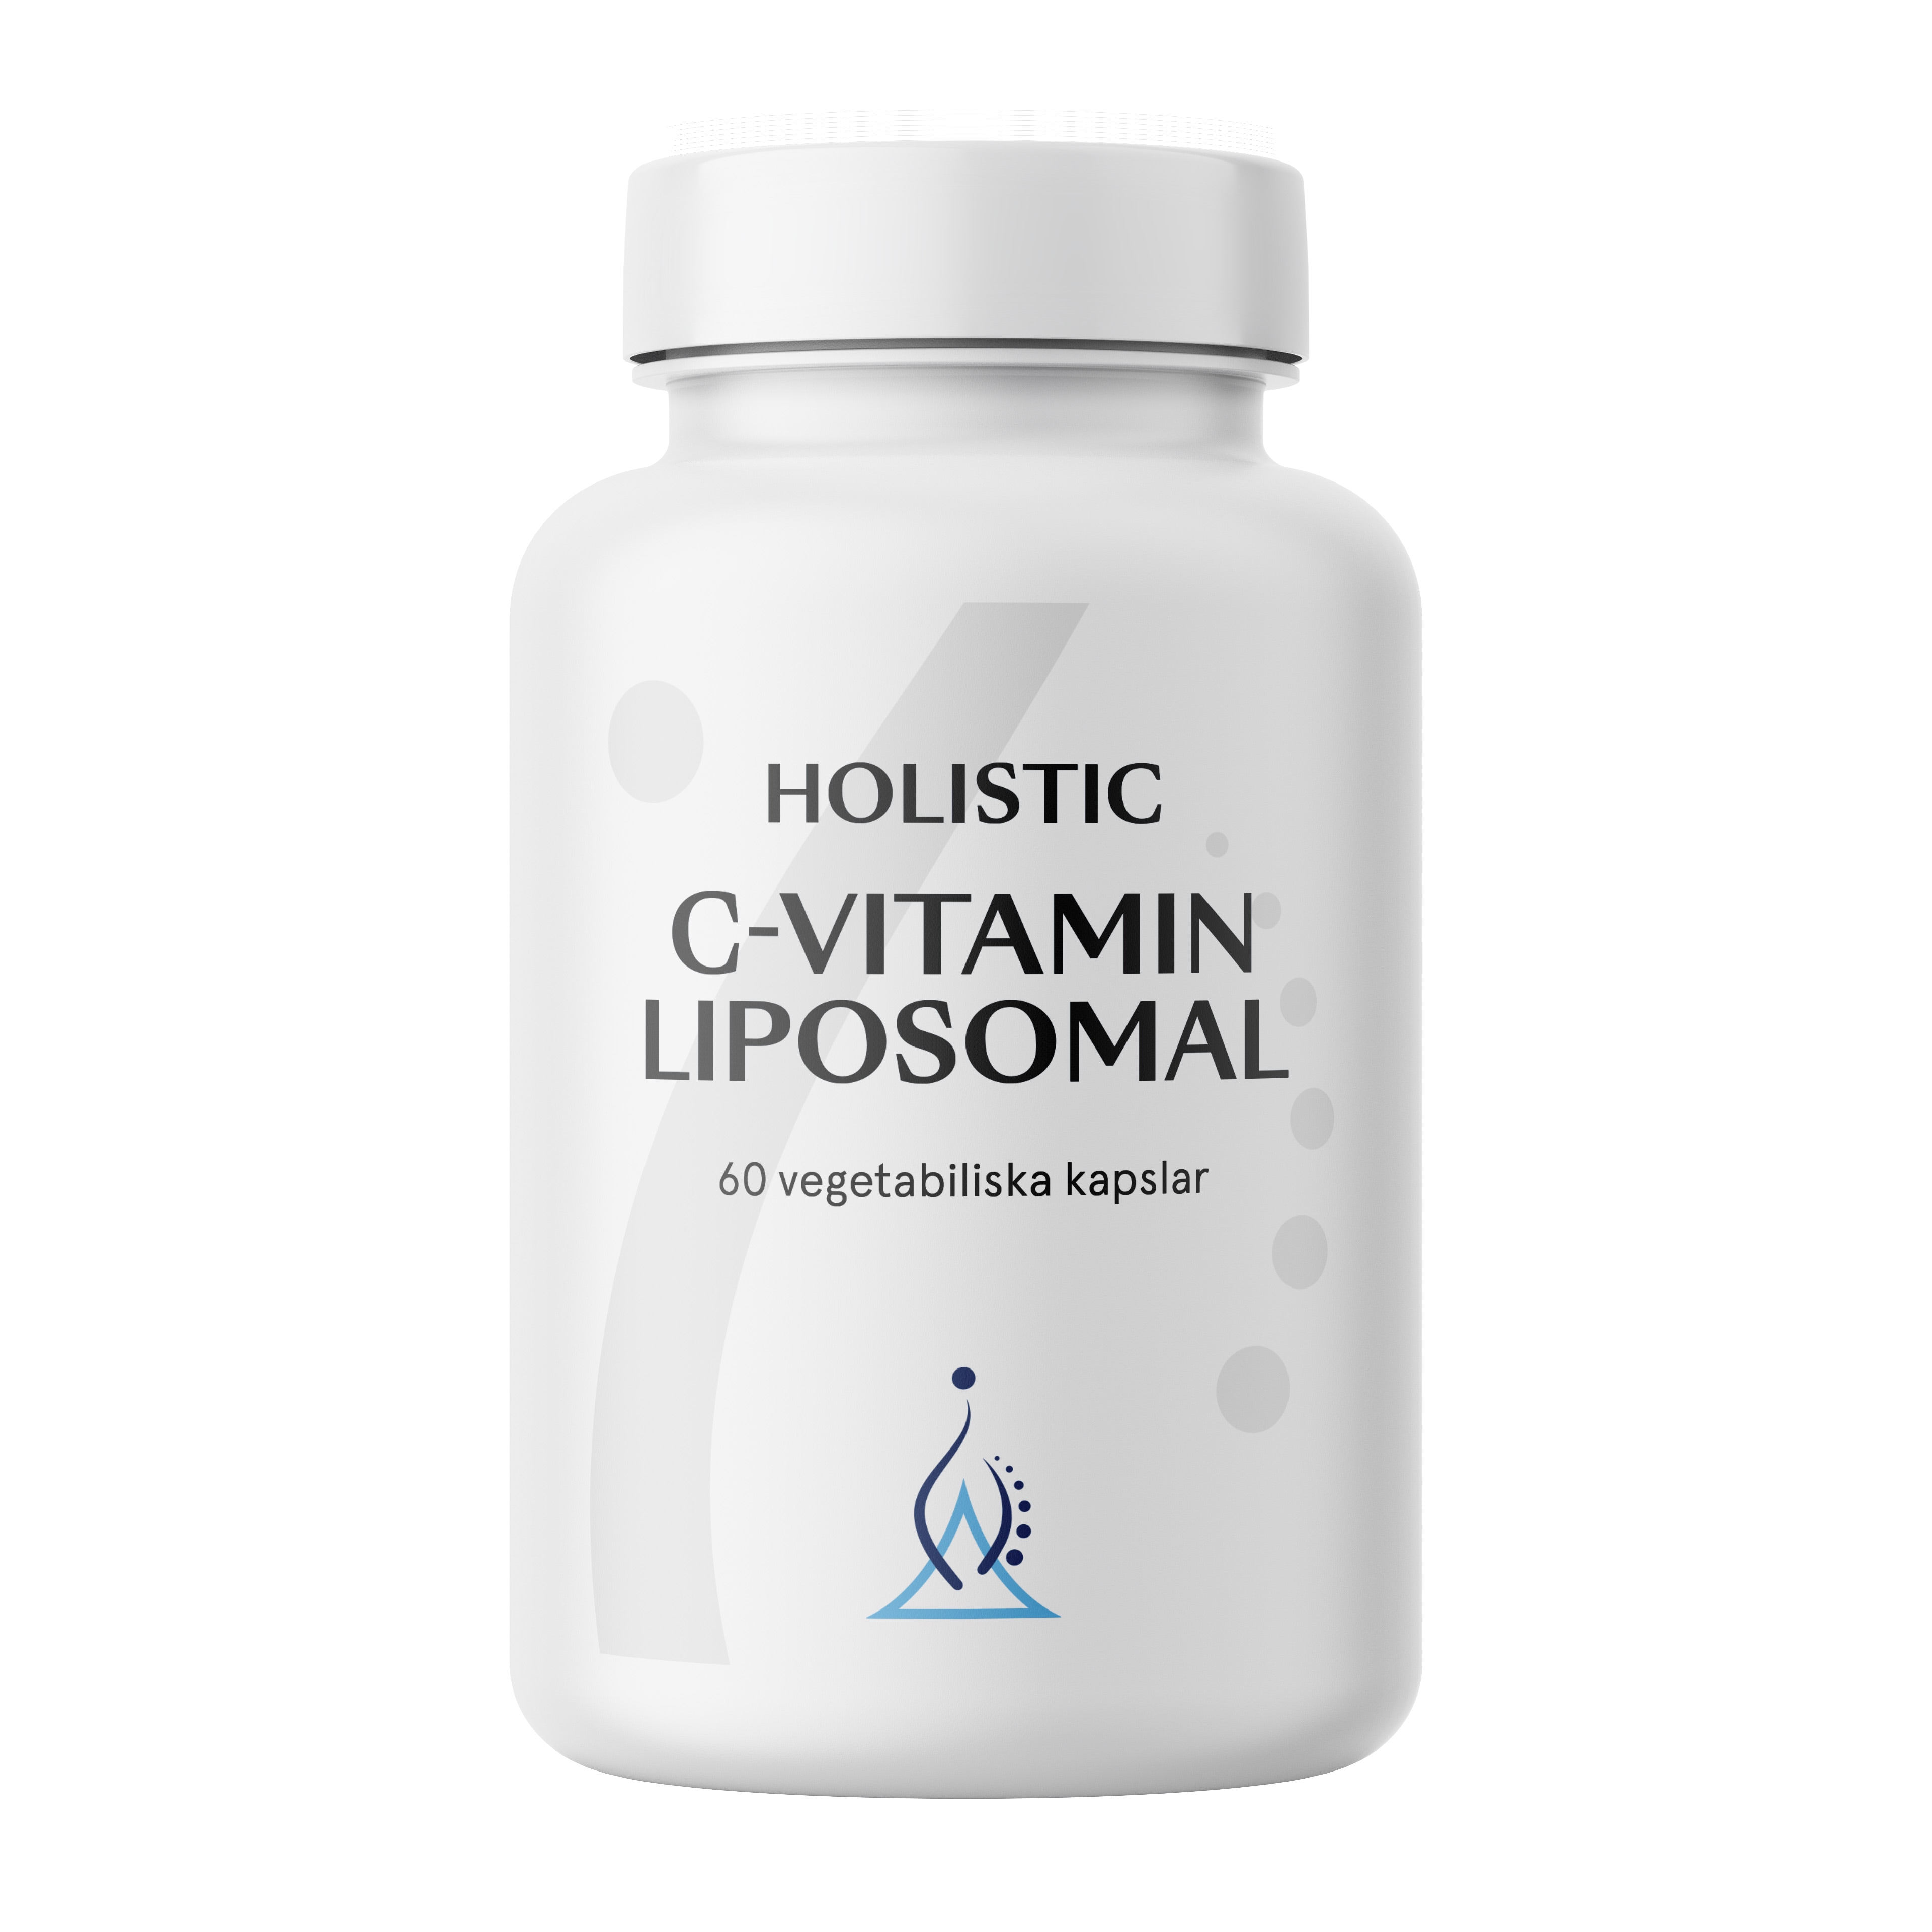 C-vitamin liposomal 60 kapslar